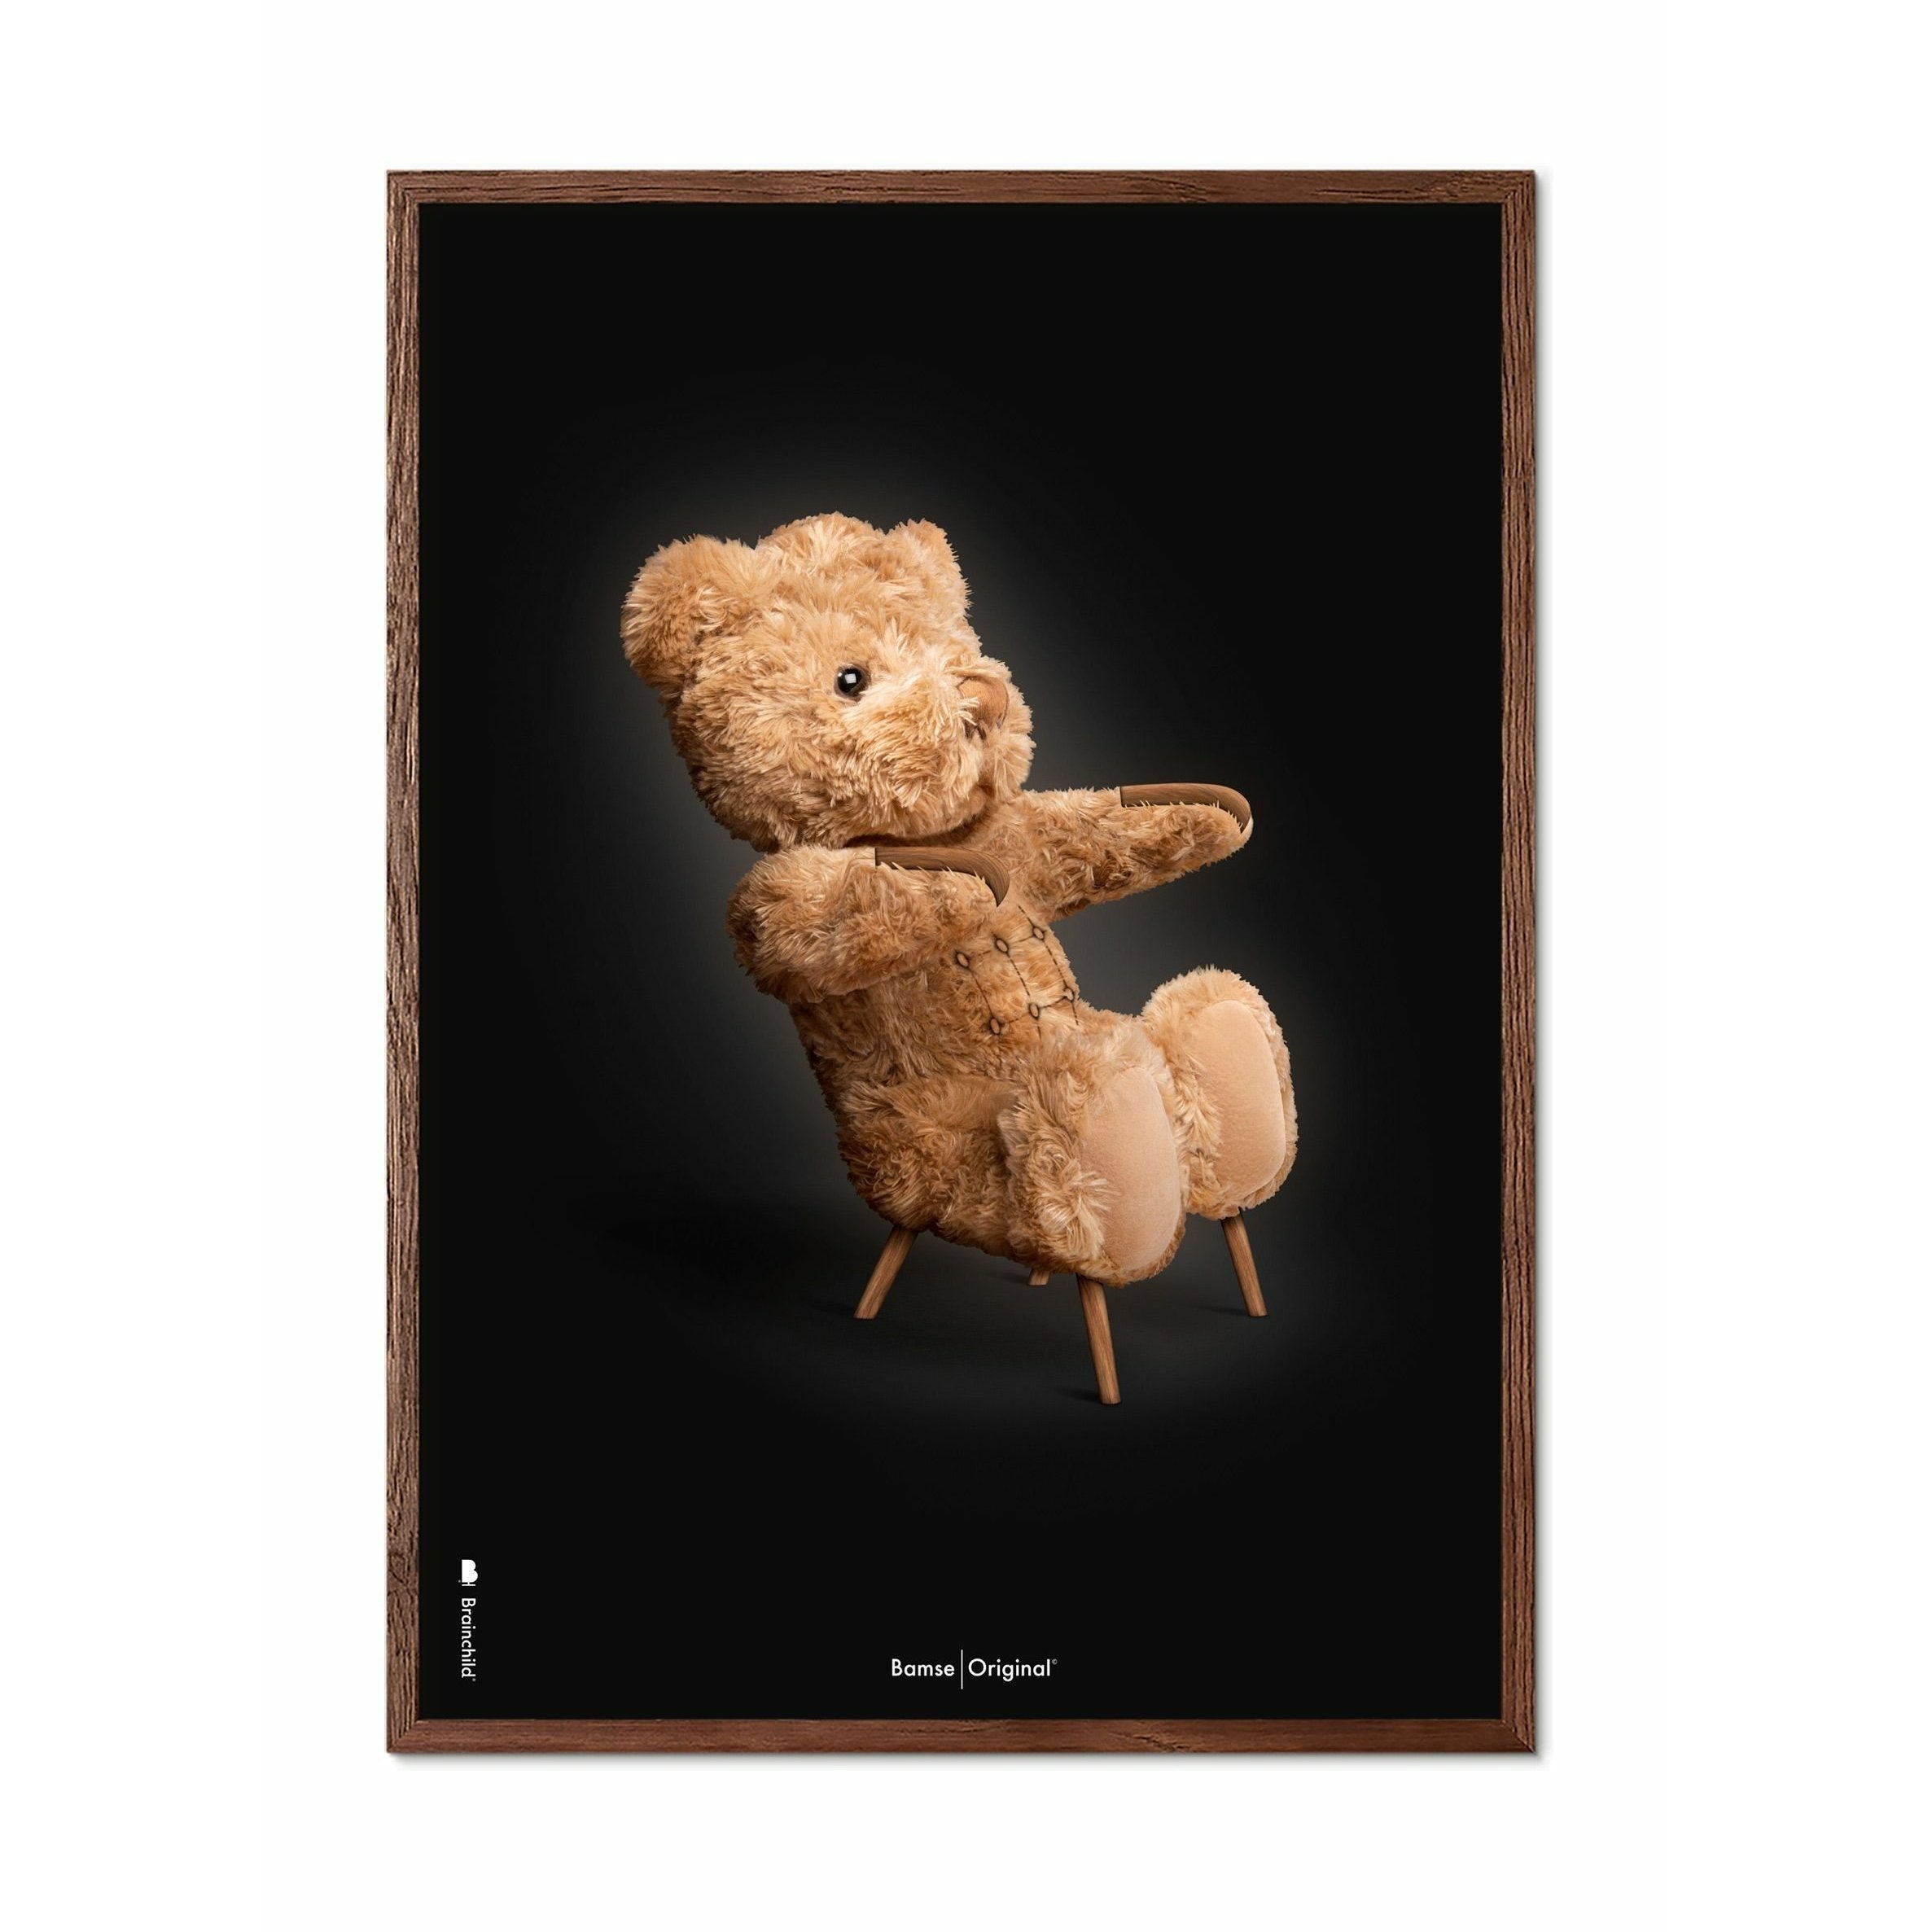 Brainchild Teddybär Classic Poster, Rahmen aus dunklem Holz 50x70 Cm, schwarzer Hintergrund